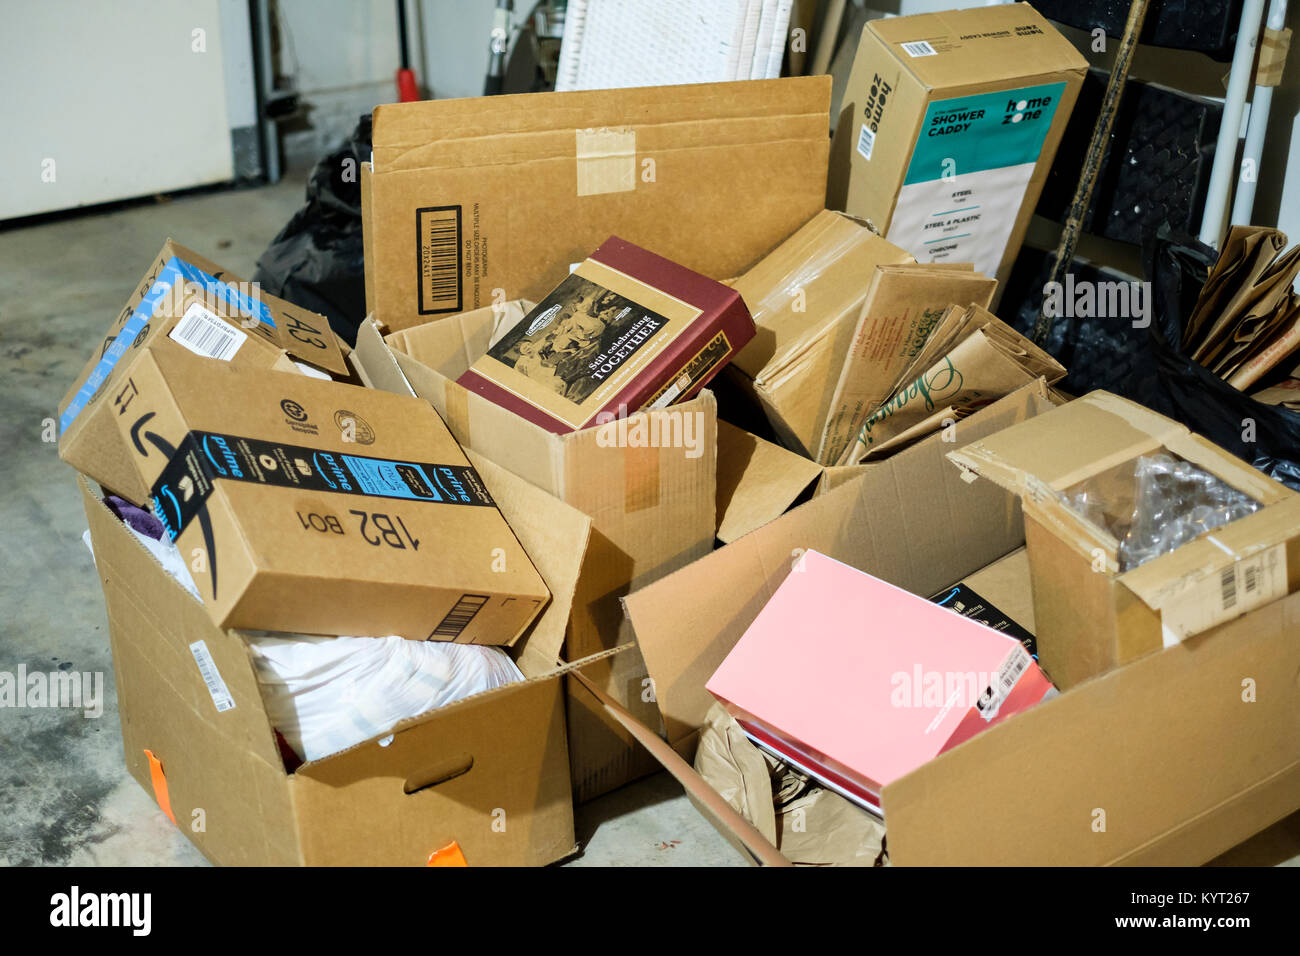 Ein Stapel von Kartons in einer Garage für beweglicher Tag gespeichert. Oklahoma, USA. Konzepte. Stockfoto